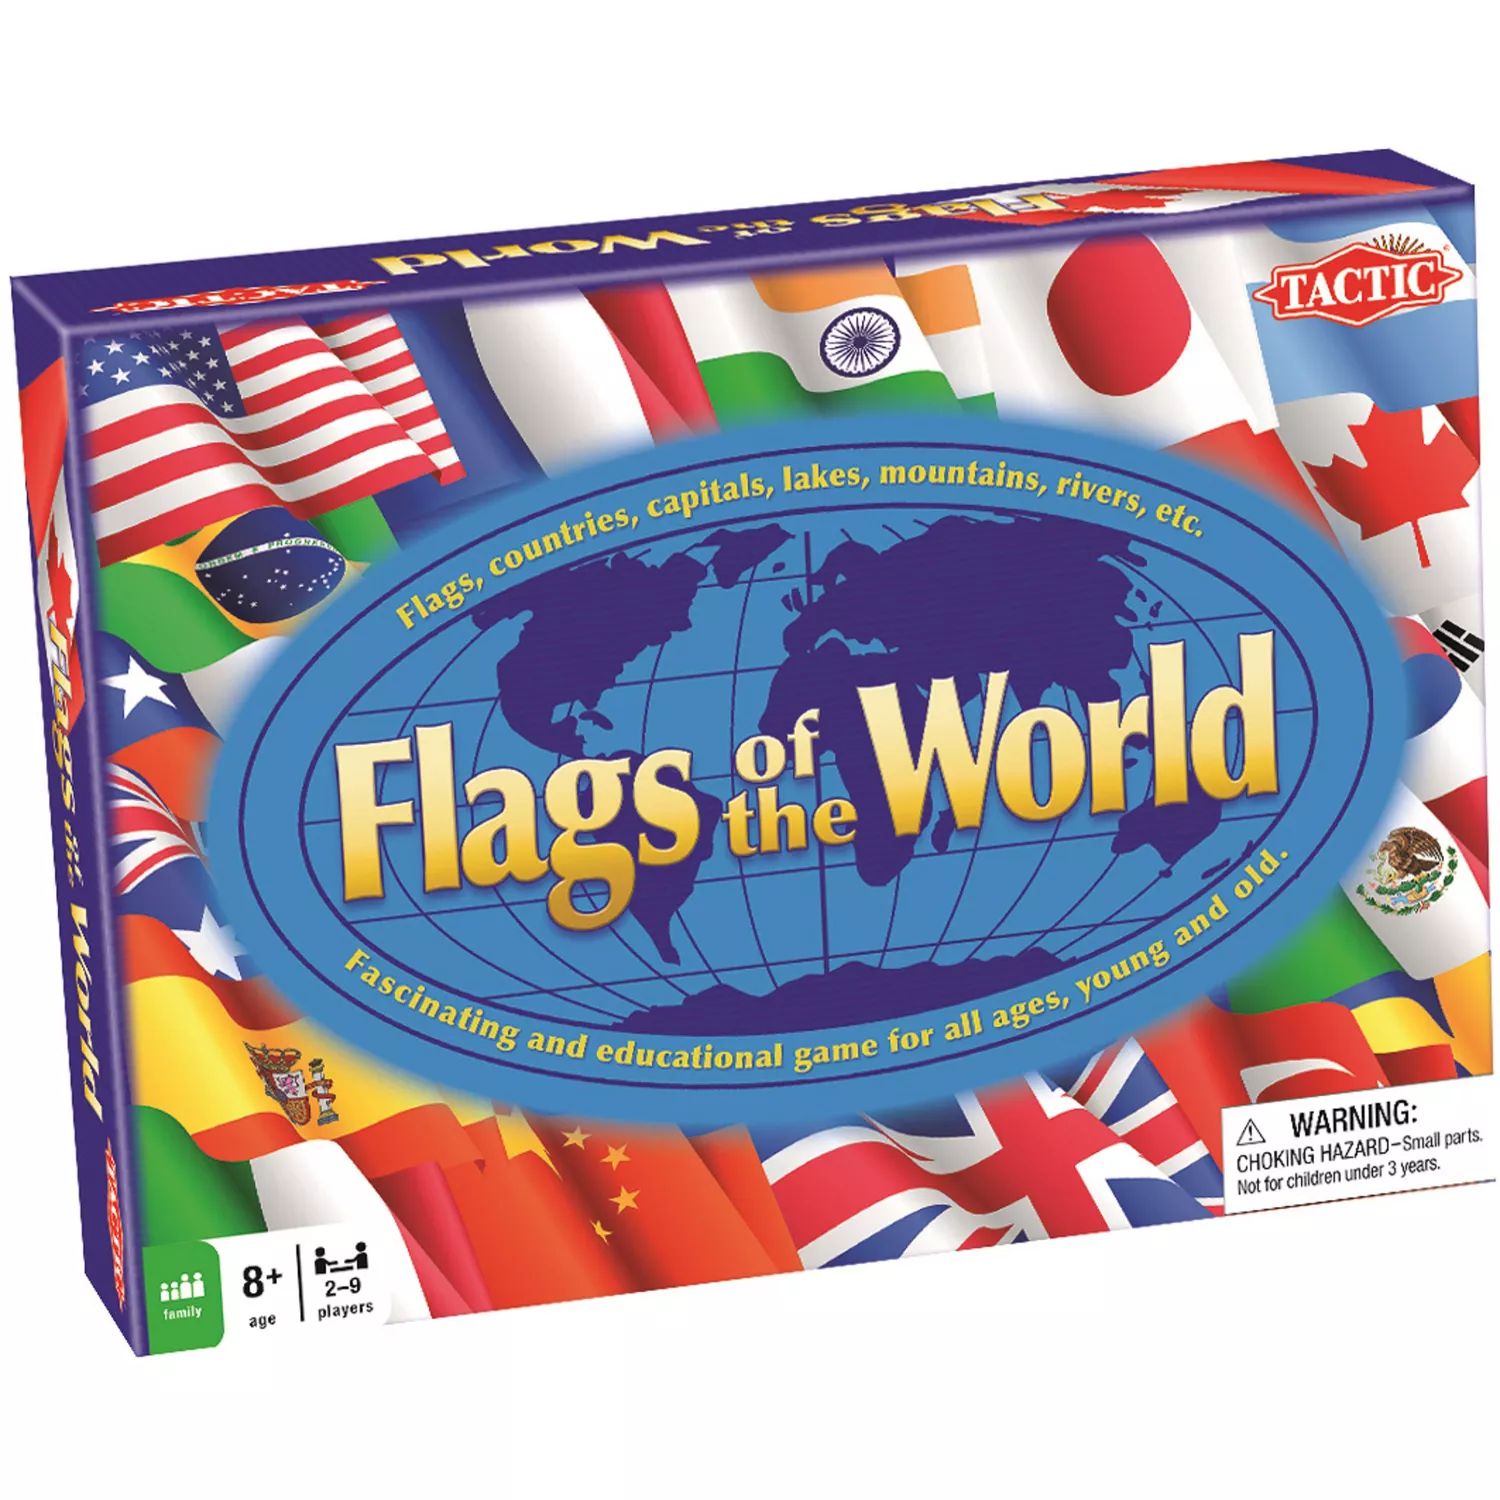 Флаги мировой настольной игры Tactic tactic элиас 2